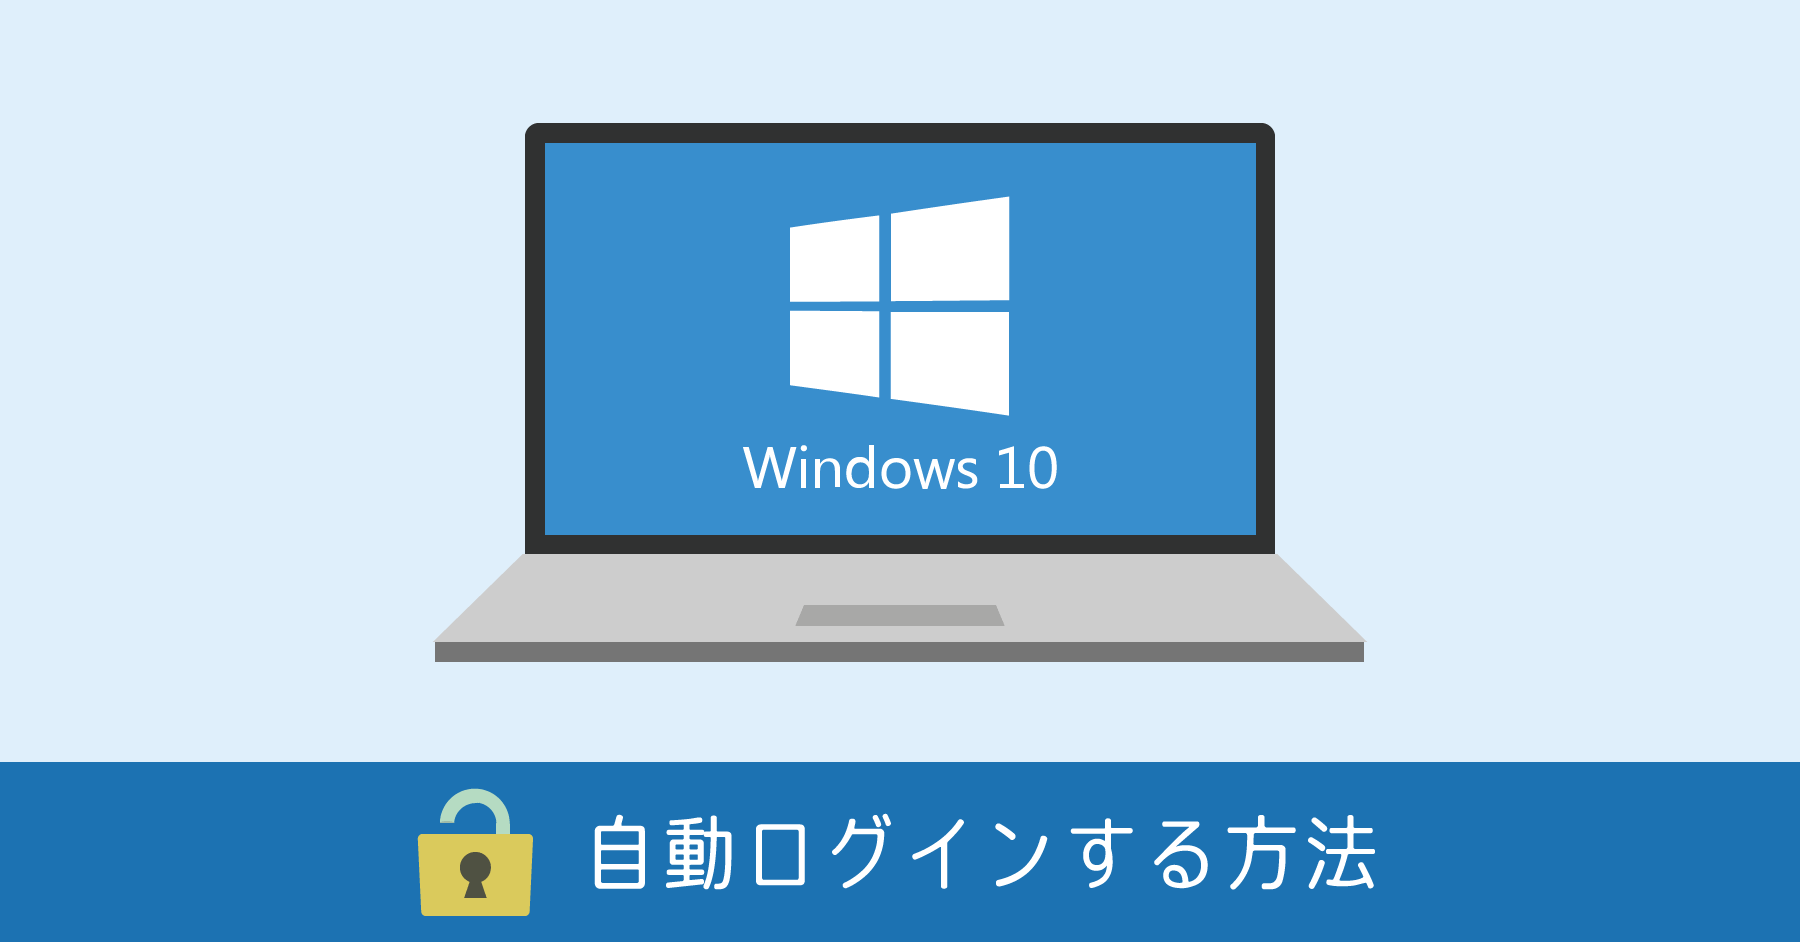 Windows 10 自動ログインの設定方法